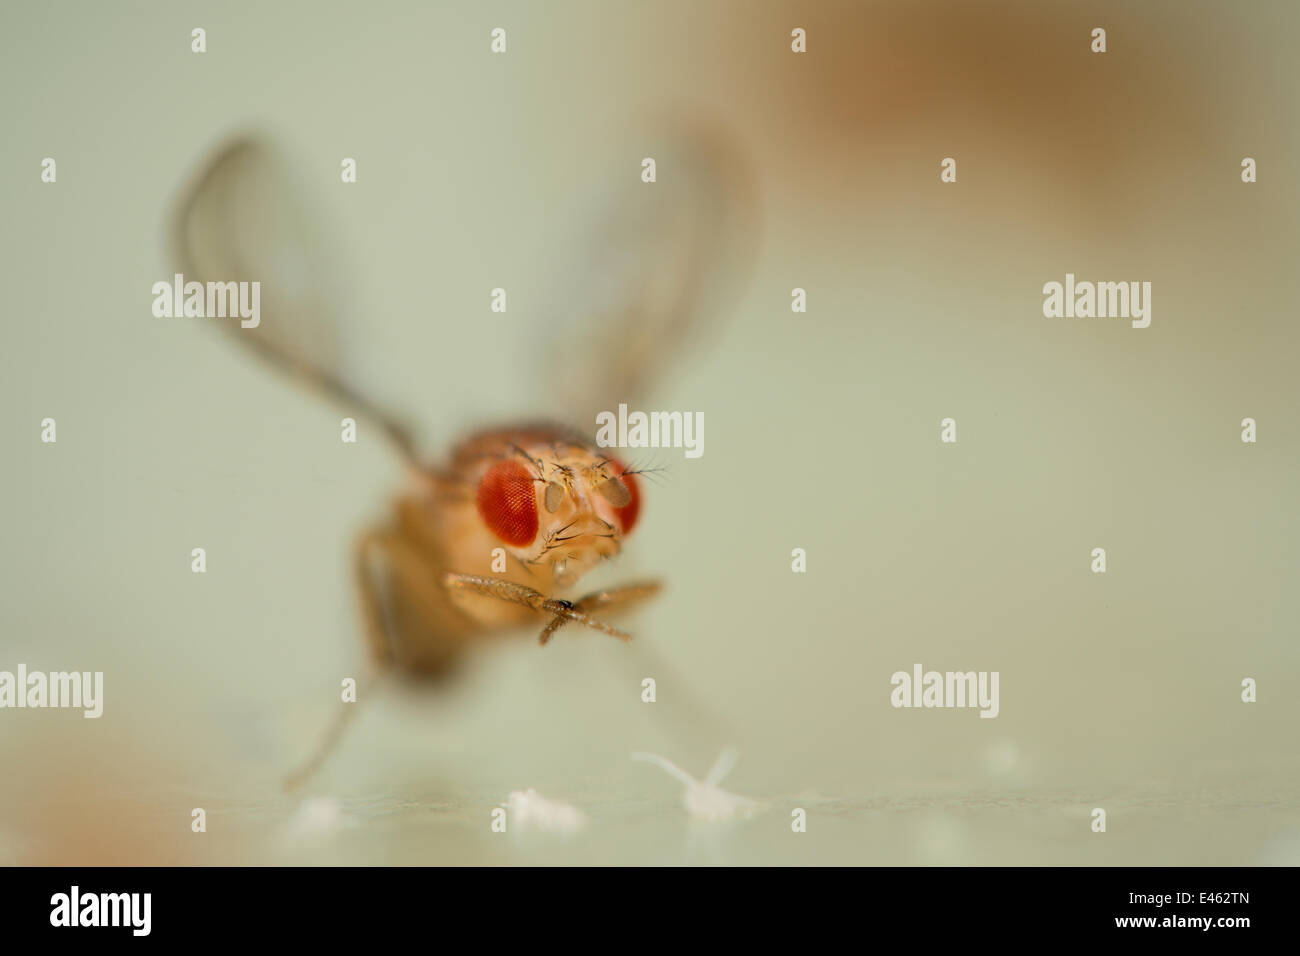 La mouche des fruits communs (Drosophila melanogaster) culture en laboratoire (ailes bouclés tournent vers le haut) mutant, les mutations sont utilisés comme marqueurs génétiques dans la recherche sur les gènes de la drosophile, Vienne Centre de RNAi, Institut de Pathologie Moléculaire, l'Autriche. Banque D'Images